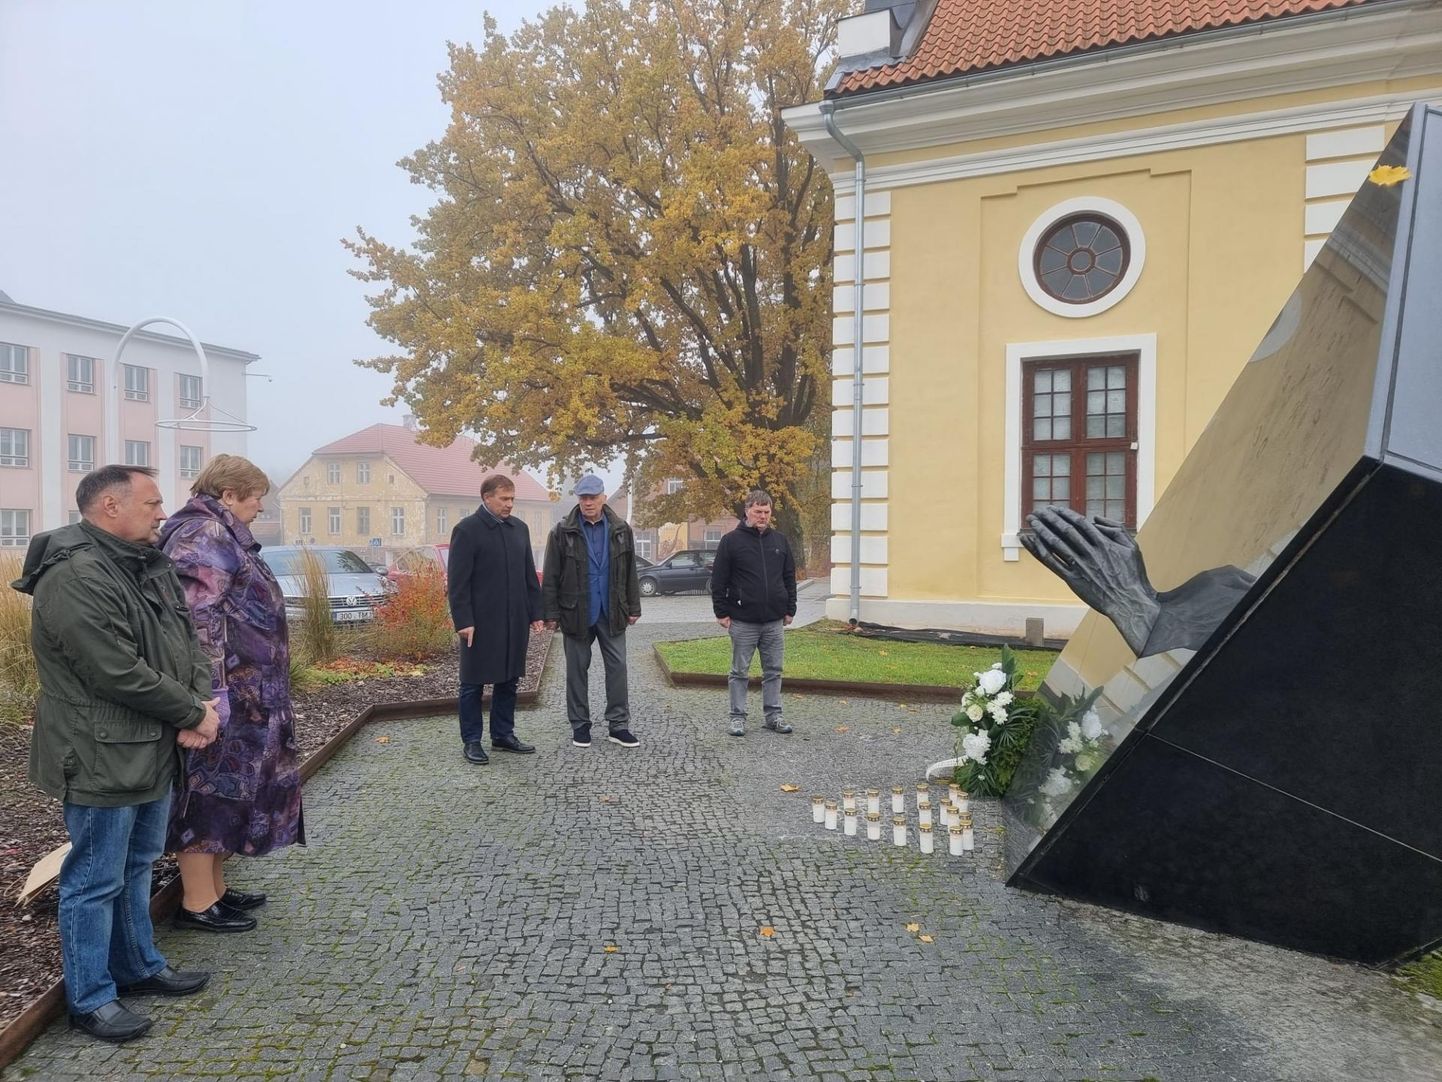 Võru linnavolikogu esimees Ülo Tulik ja abilinnapea Sixten Sild asetasid traagilise sündmuse meenutamiseks Võrus asuva Estonia mälestusmärgi juurde pärja ning süütasid 17 mälestusküünalt.